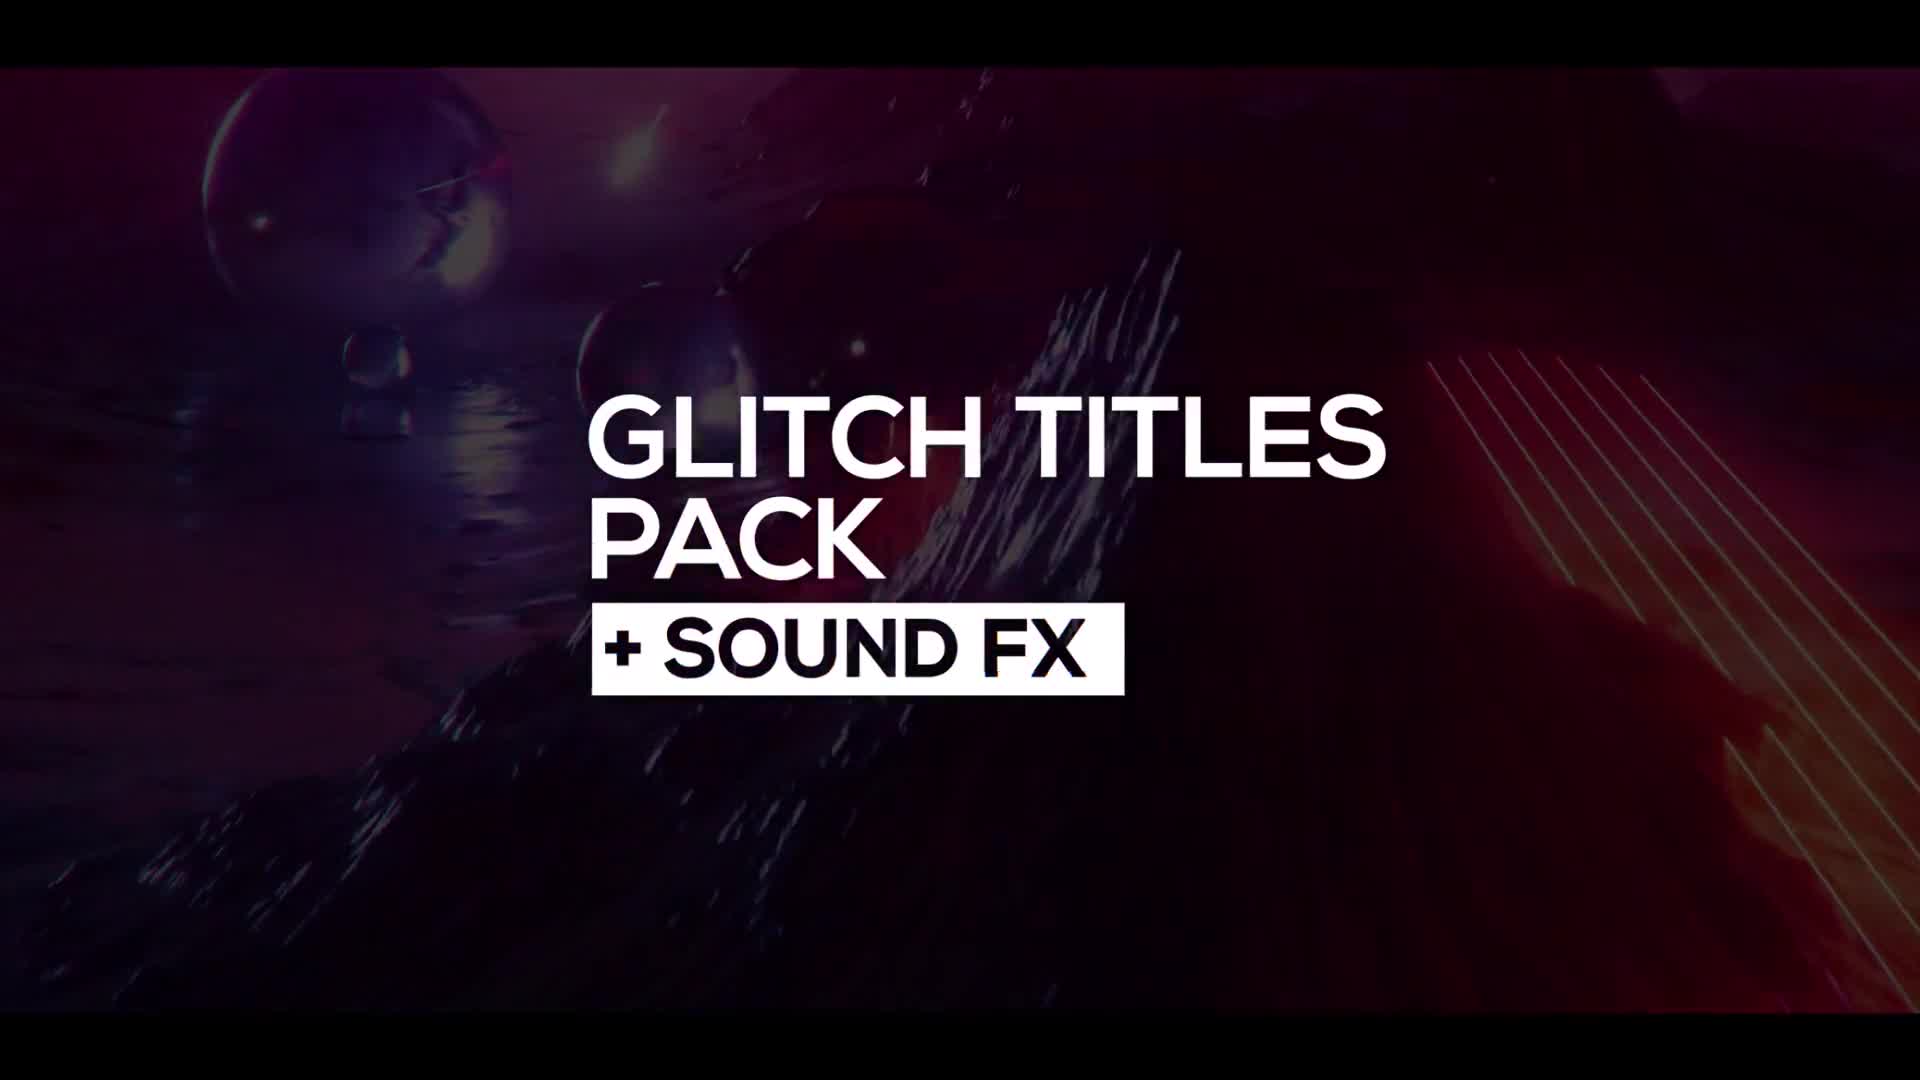 30 Glitch Titles + Sound FX for Premiere Pro Videohive 24916988 Premiere Pro Image 1